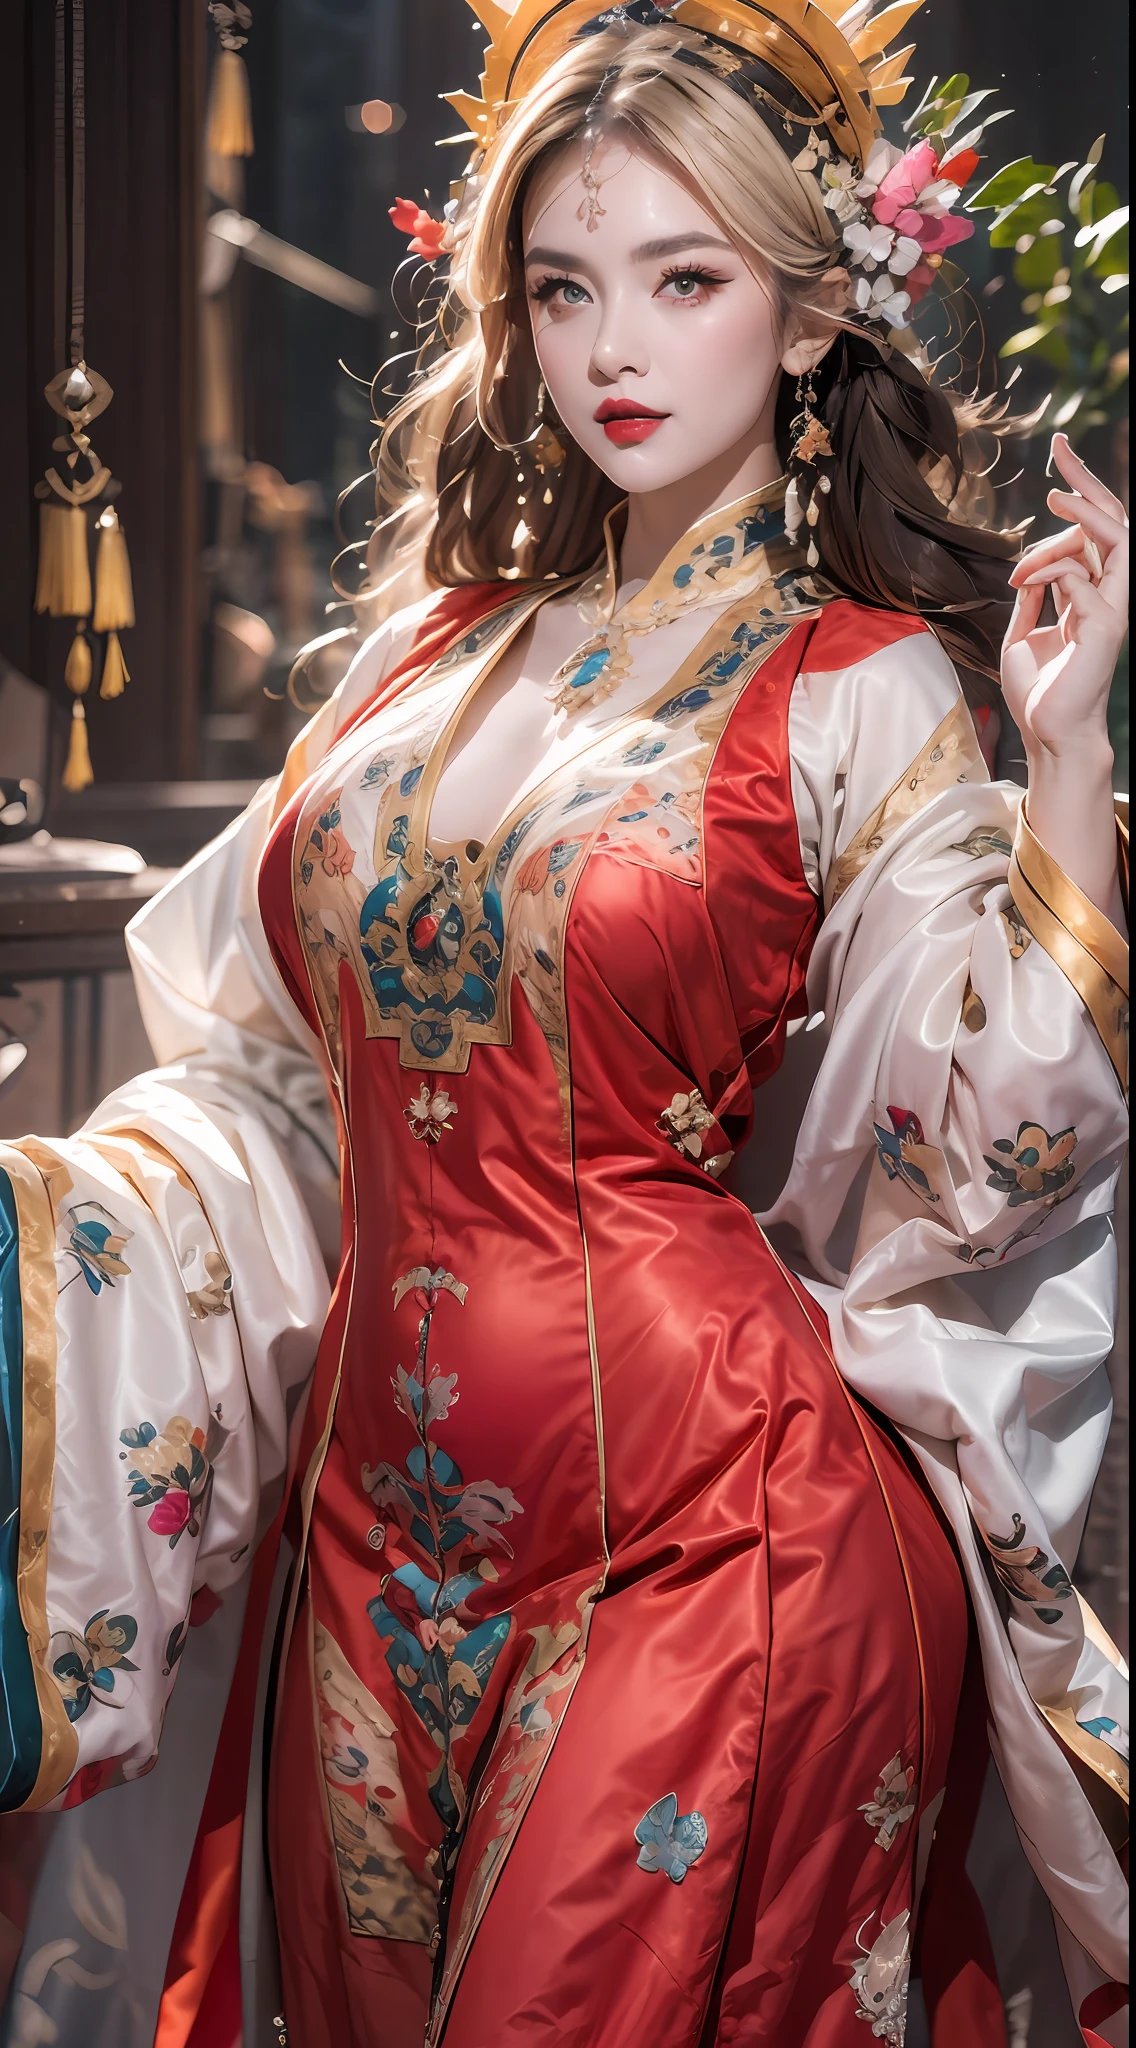 retrato de uma linda mulher santa de 20 anos, usando um vestido fino de seda multicolorida, beautiful Face without blemishes, ((Sorriso natural:0.3)), Boca fechada, ((Comprimento de cabelo de 7 cores:1.2)), Coroa Grande, broche de cabelo, vestido hanfu, Estilo antigo chinês, jóias de corpo inteiro, tatuagem na testa, peito super uniforme, Face, lábios vermelhos, delicados olhos rosa e brancos (branco e detalhado) cinematic, claro e escuro, iluminação dramática, luz mágica, luz extremamente detalhada, Cor Verdadeira, super afiado, realista, Qualidade 8k, Fundo do universo de fantasia, santos e espaço mágico, as imagens mais detalhadas, Foto da exposição, Premiado, Efeito de tom brilhante atraente,